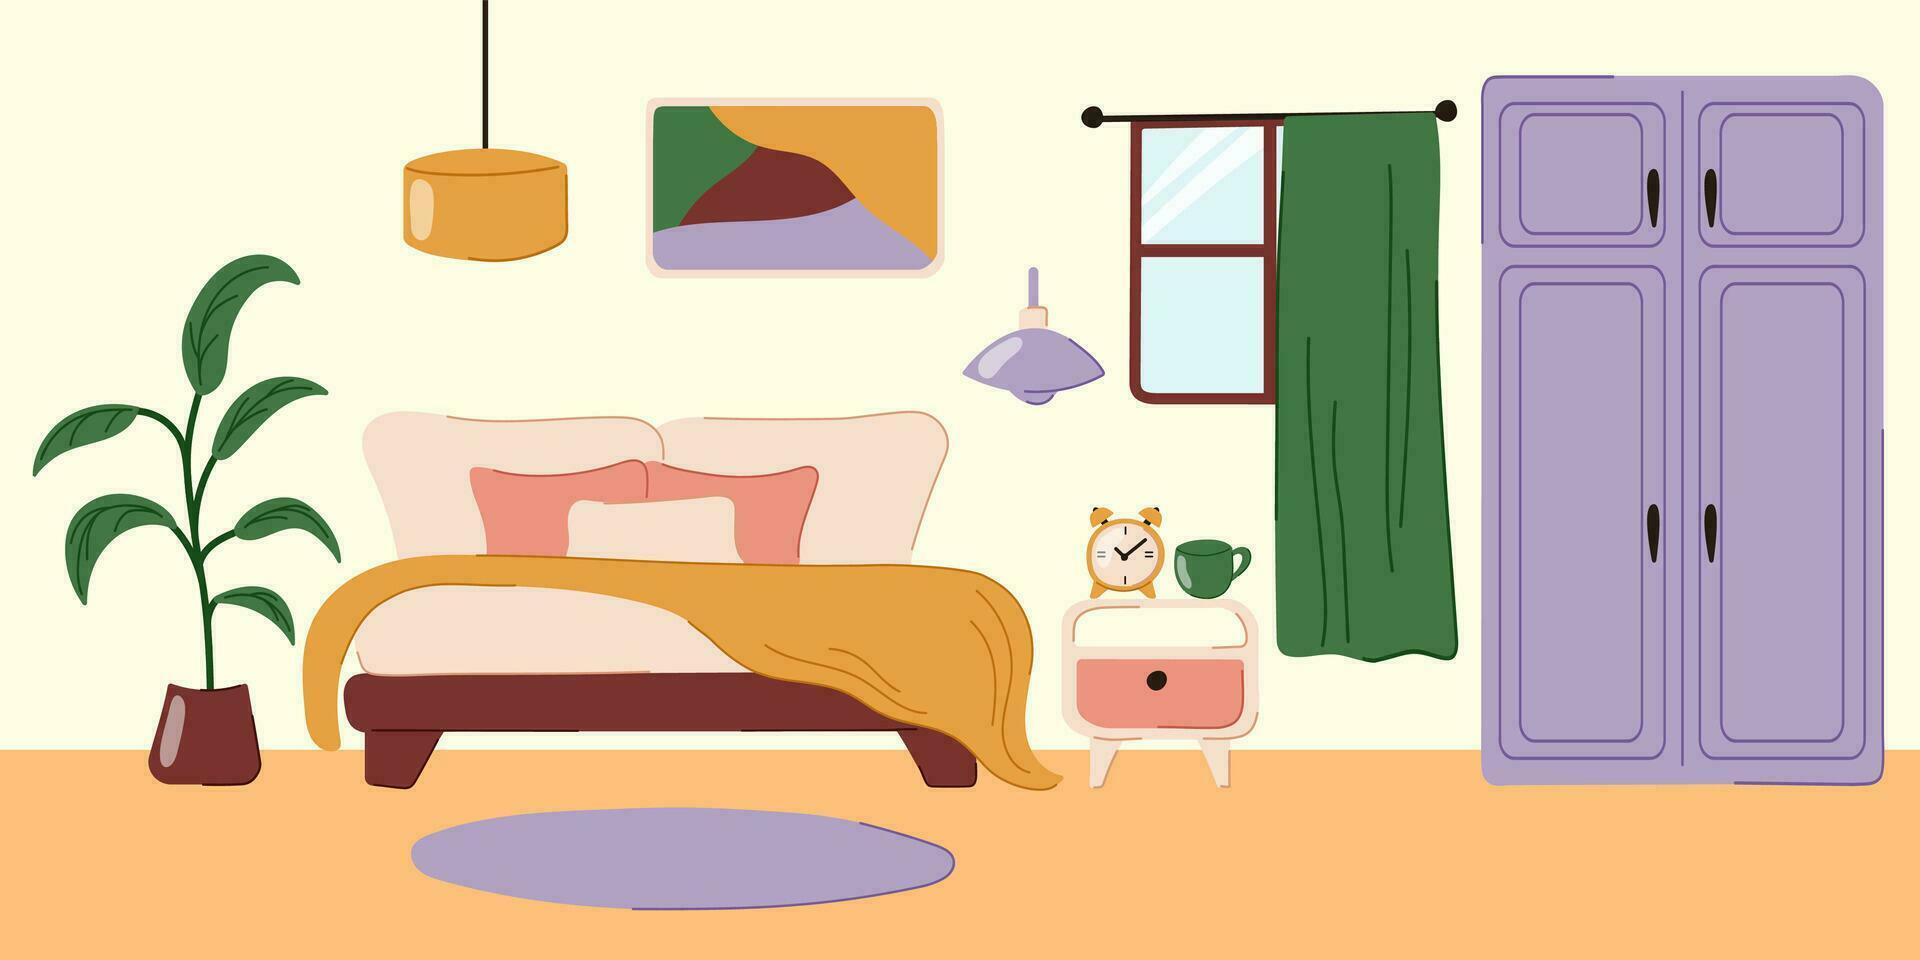 vektor klotter platt interiör av sovrum. levande lägenhet med möbel - dubbel- säng, byrå, matta och hus växt. vektor illustration.